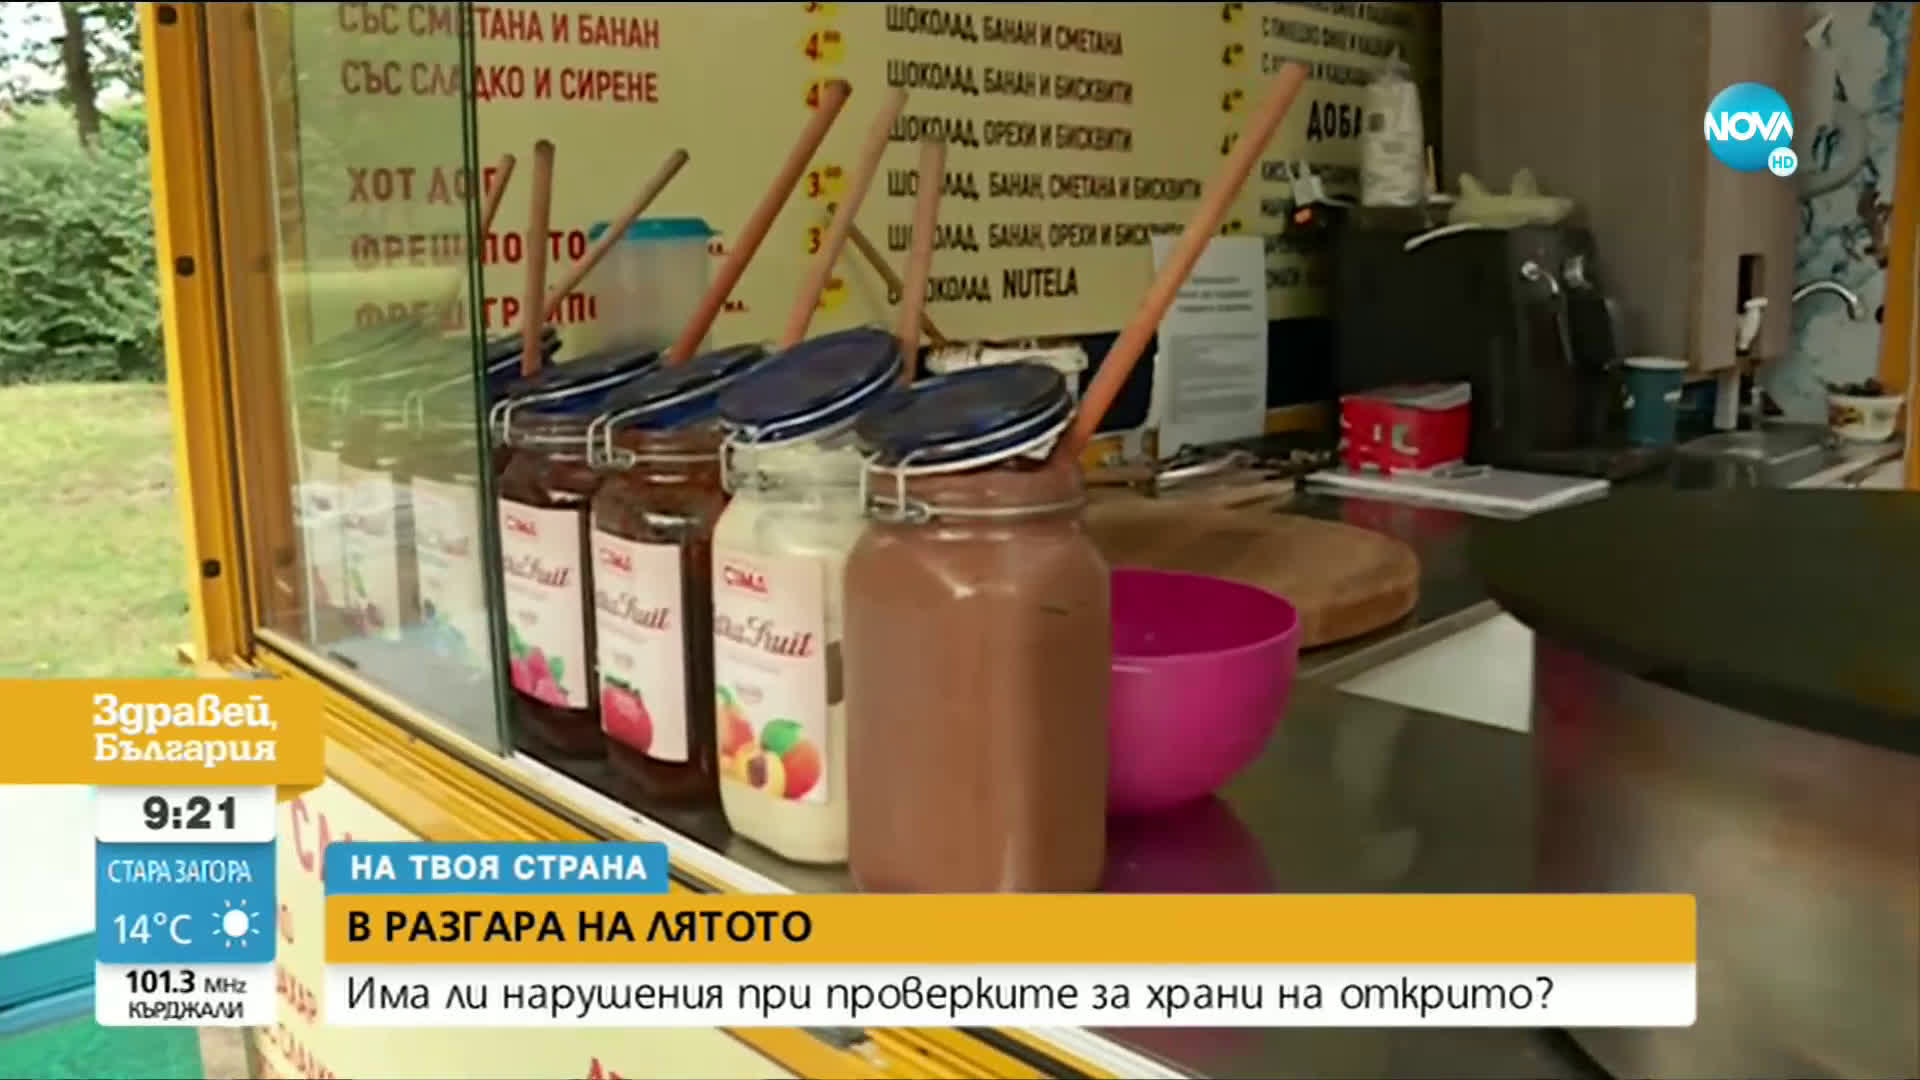 В РАЗГАРА НА ЛЯТОТО: Инспектори проверяват спазват ли се изискванията за храната, която се продава